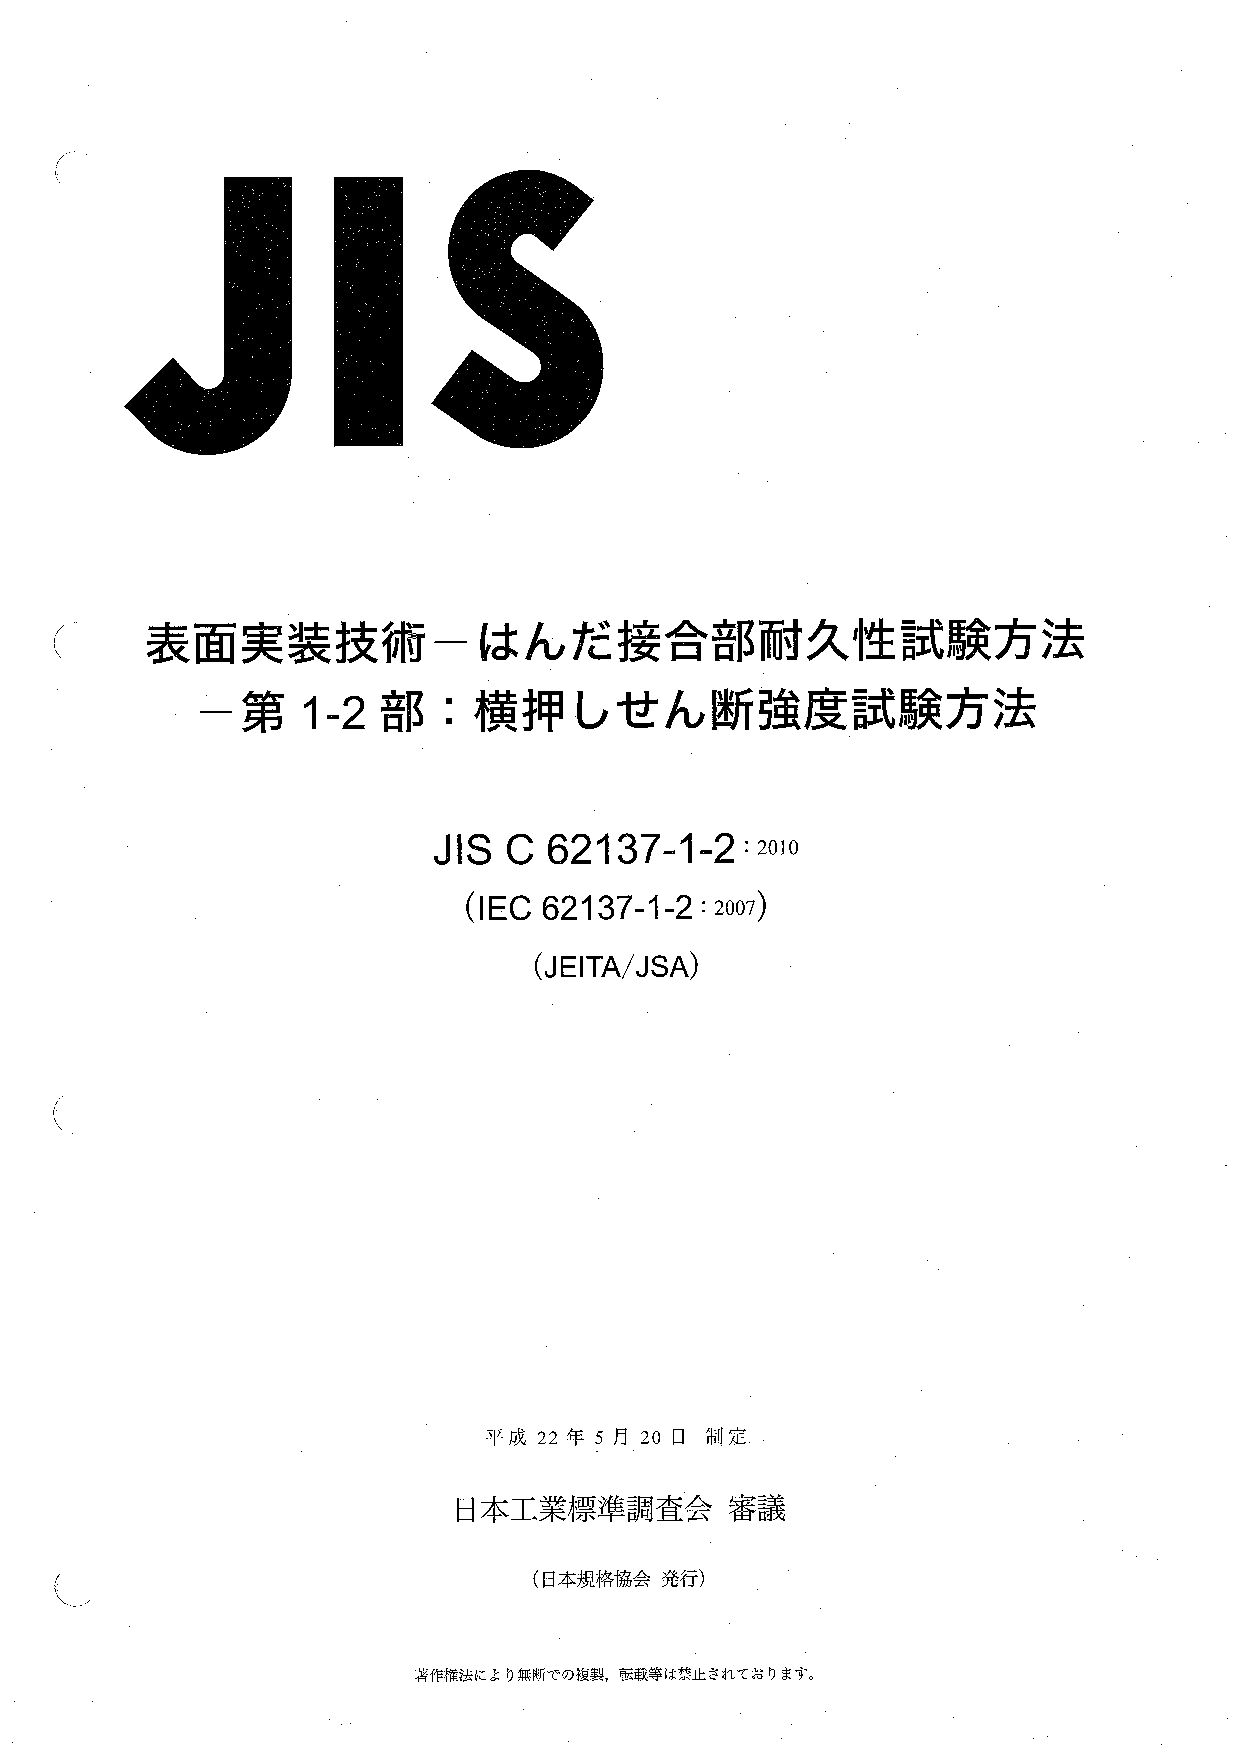 JIS C 62137-1-2:2010封面图